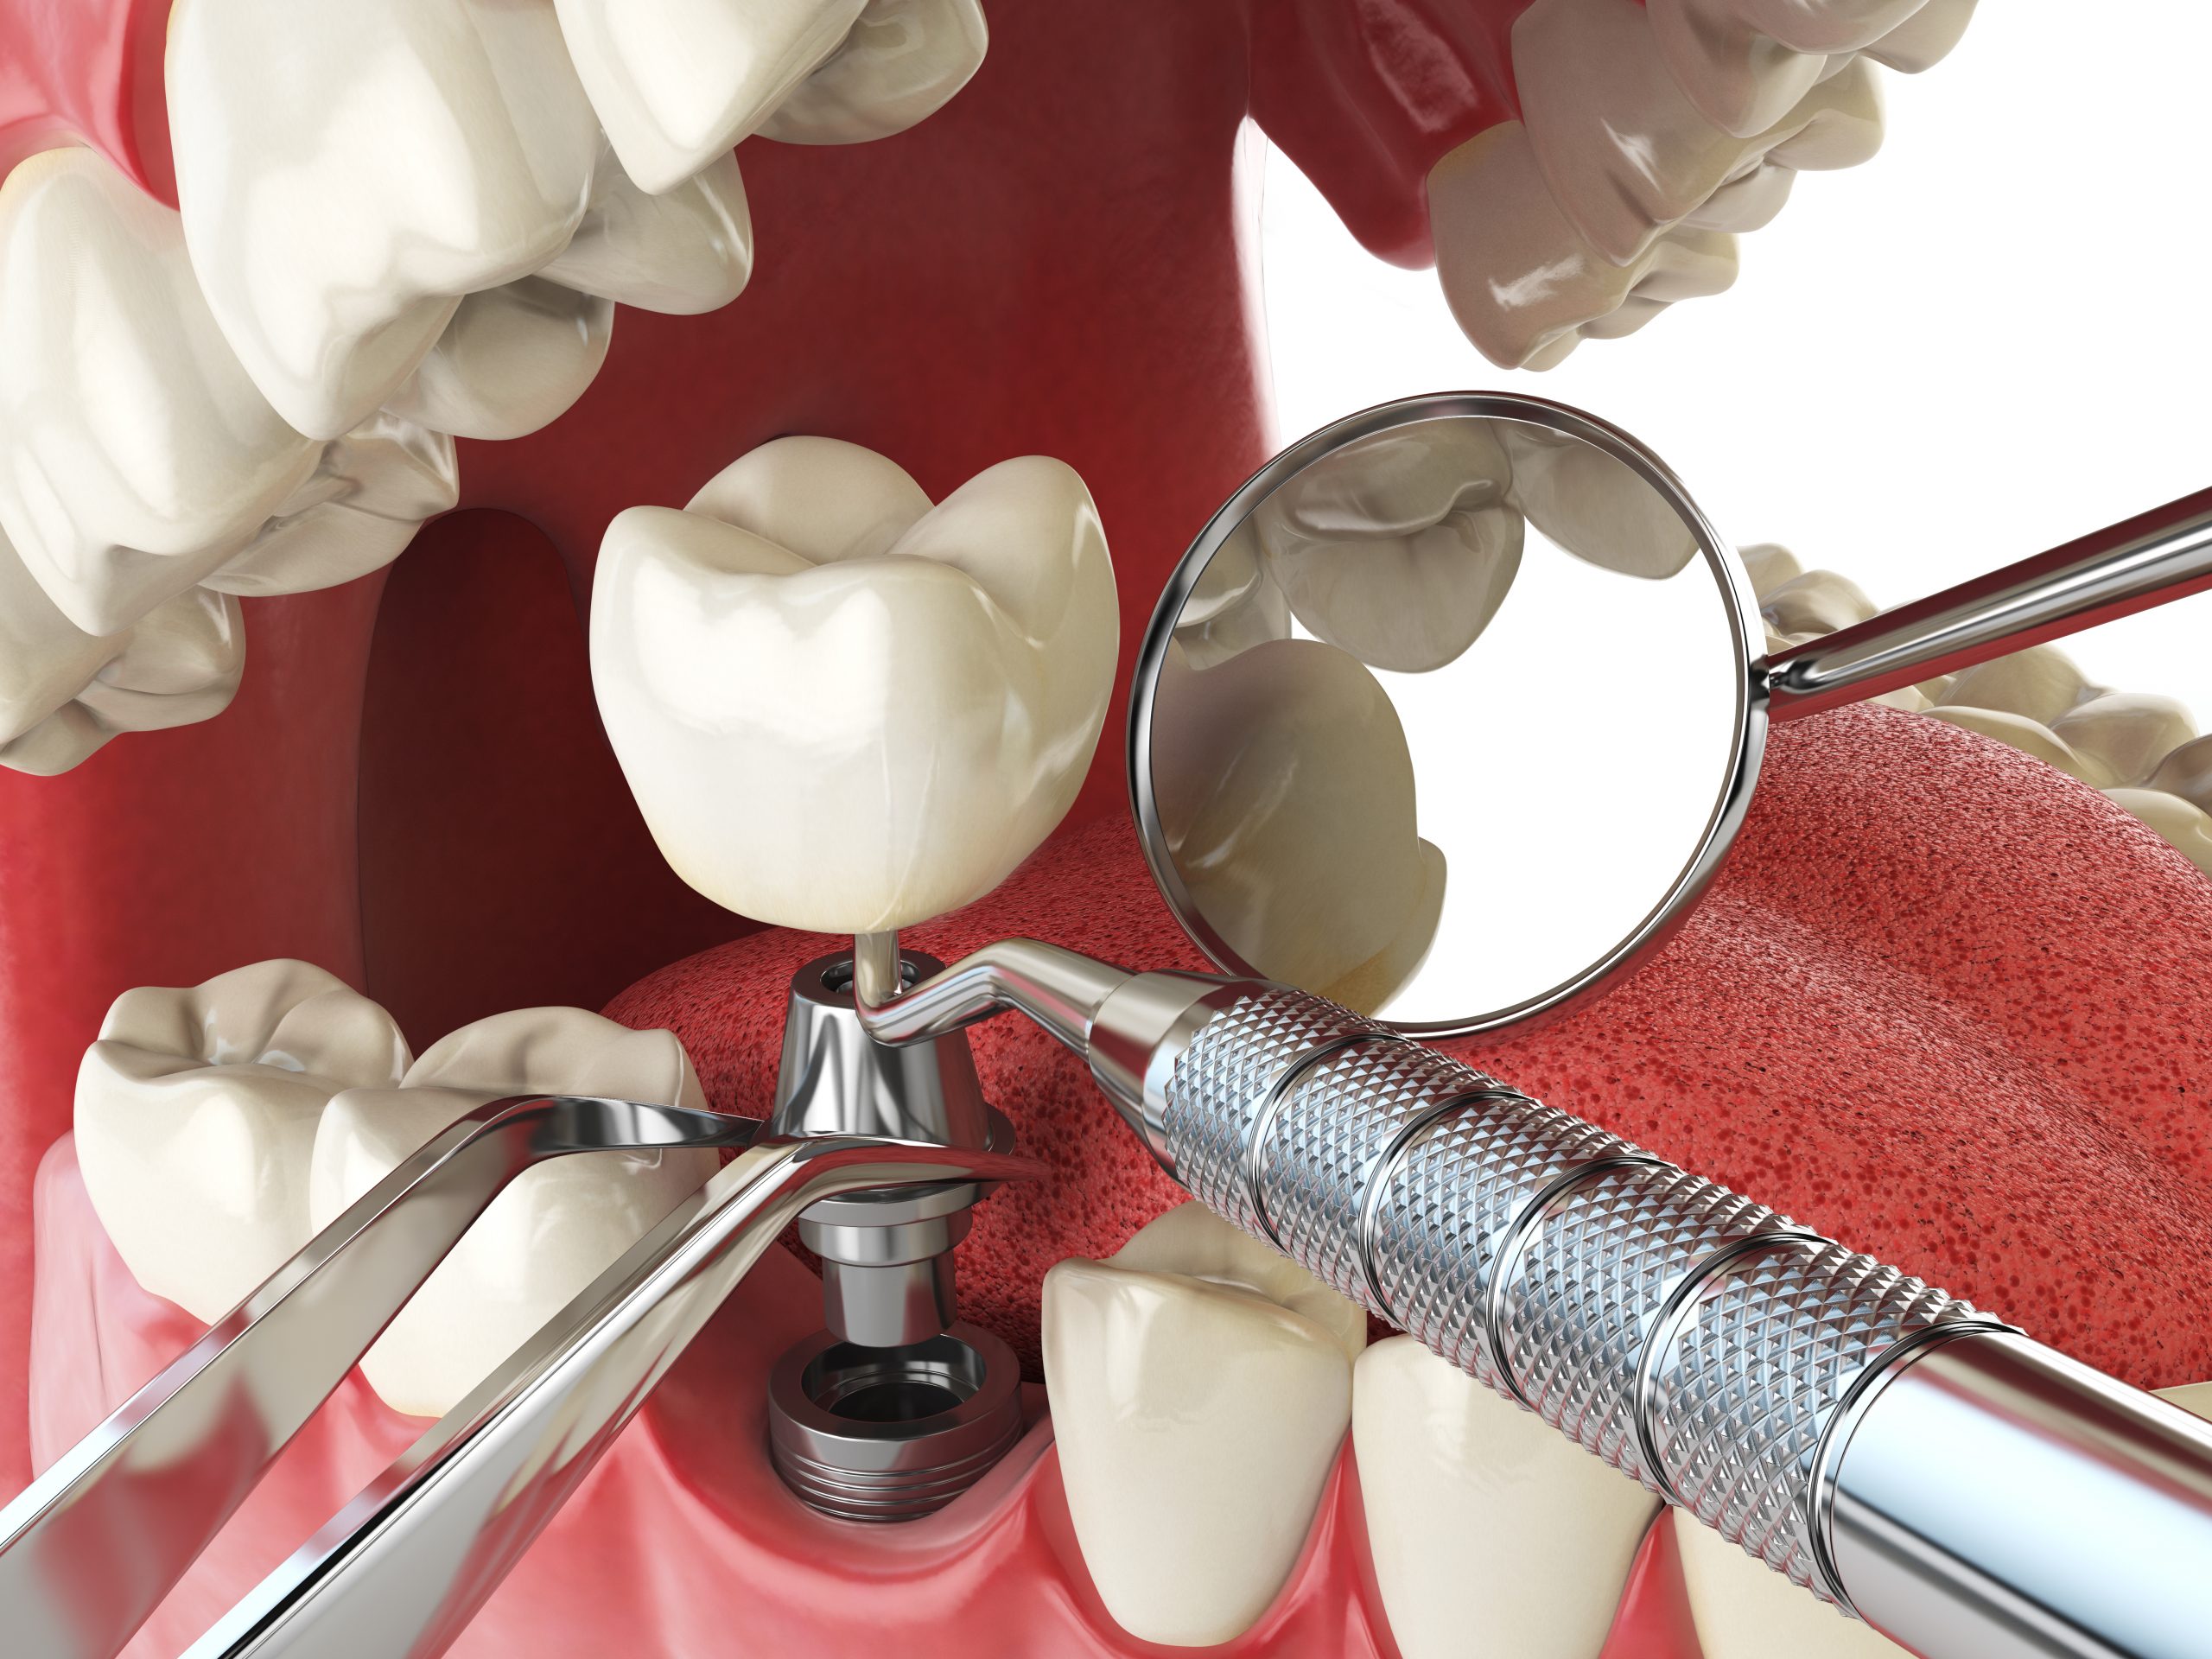 Стоматологическое протезирование отзывы. Имплантация зубов Osstem. Имплантация зубов Dental implan. Имплант Osstem + имплантация. Внутрикостная дентальная имплантация.